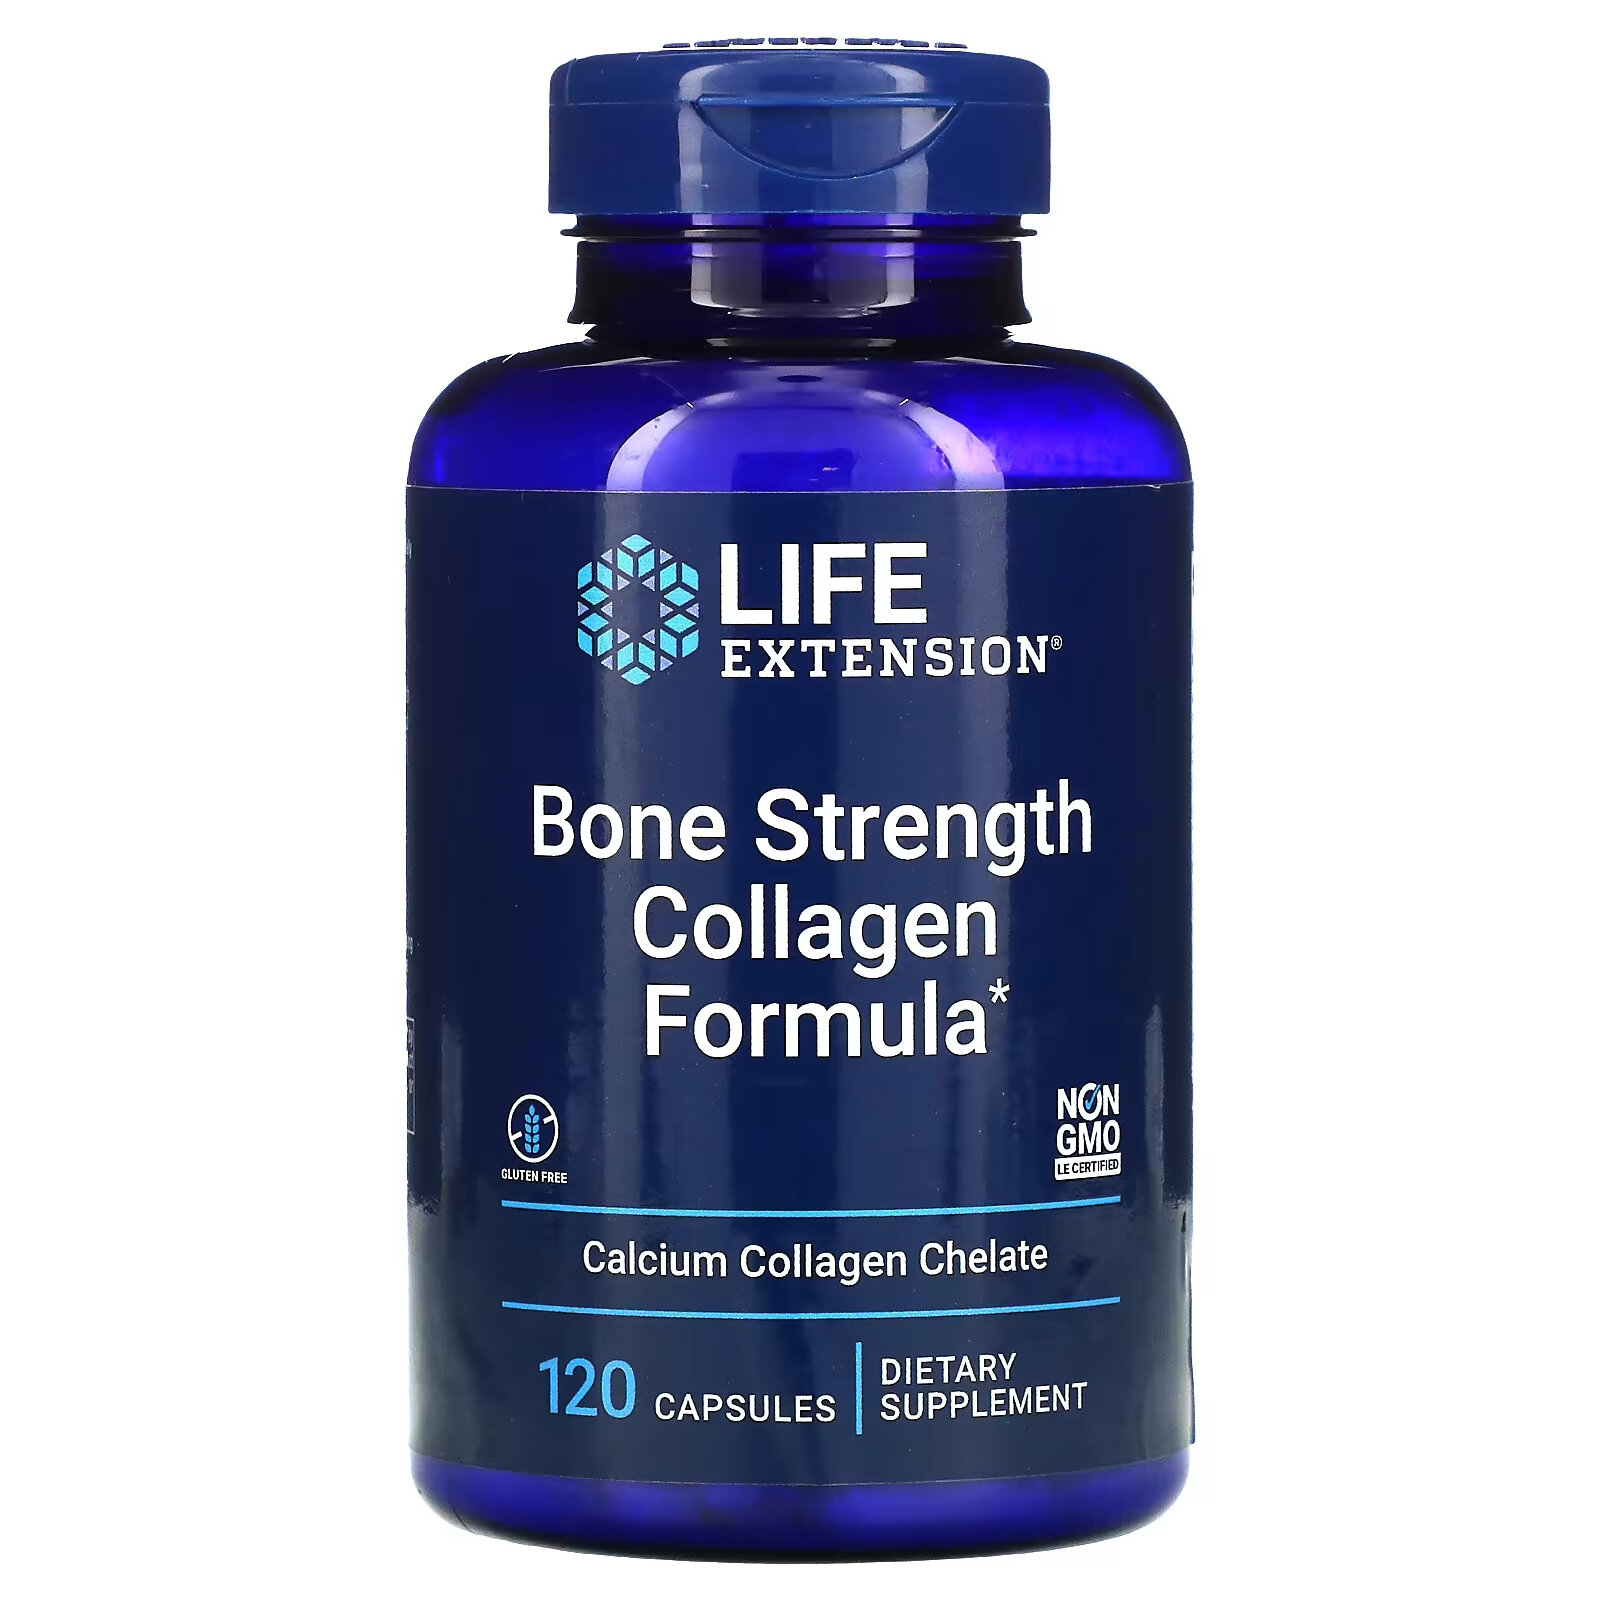 new chapter bone strength take care добавка для укрепления костей 180 маленьких растительных таблеток Life Extension, Bone Strength, добавка с коллагеном для укрепления костей, 120 капсул